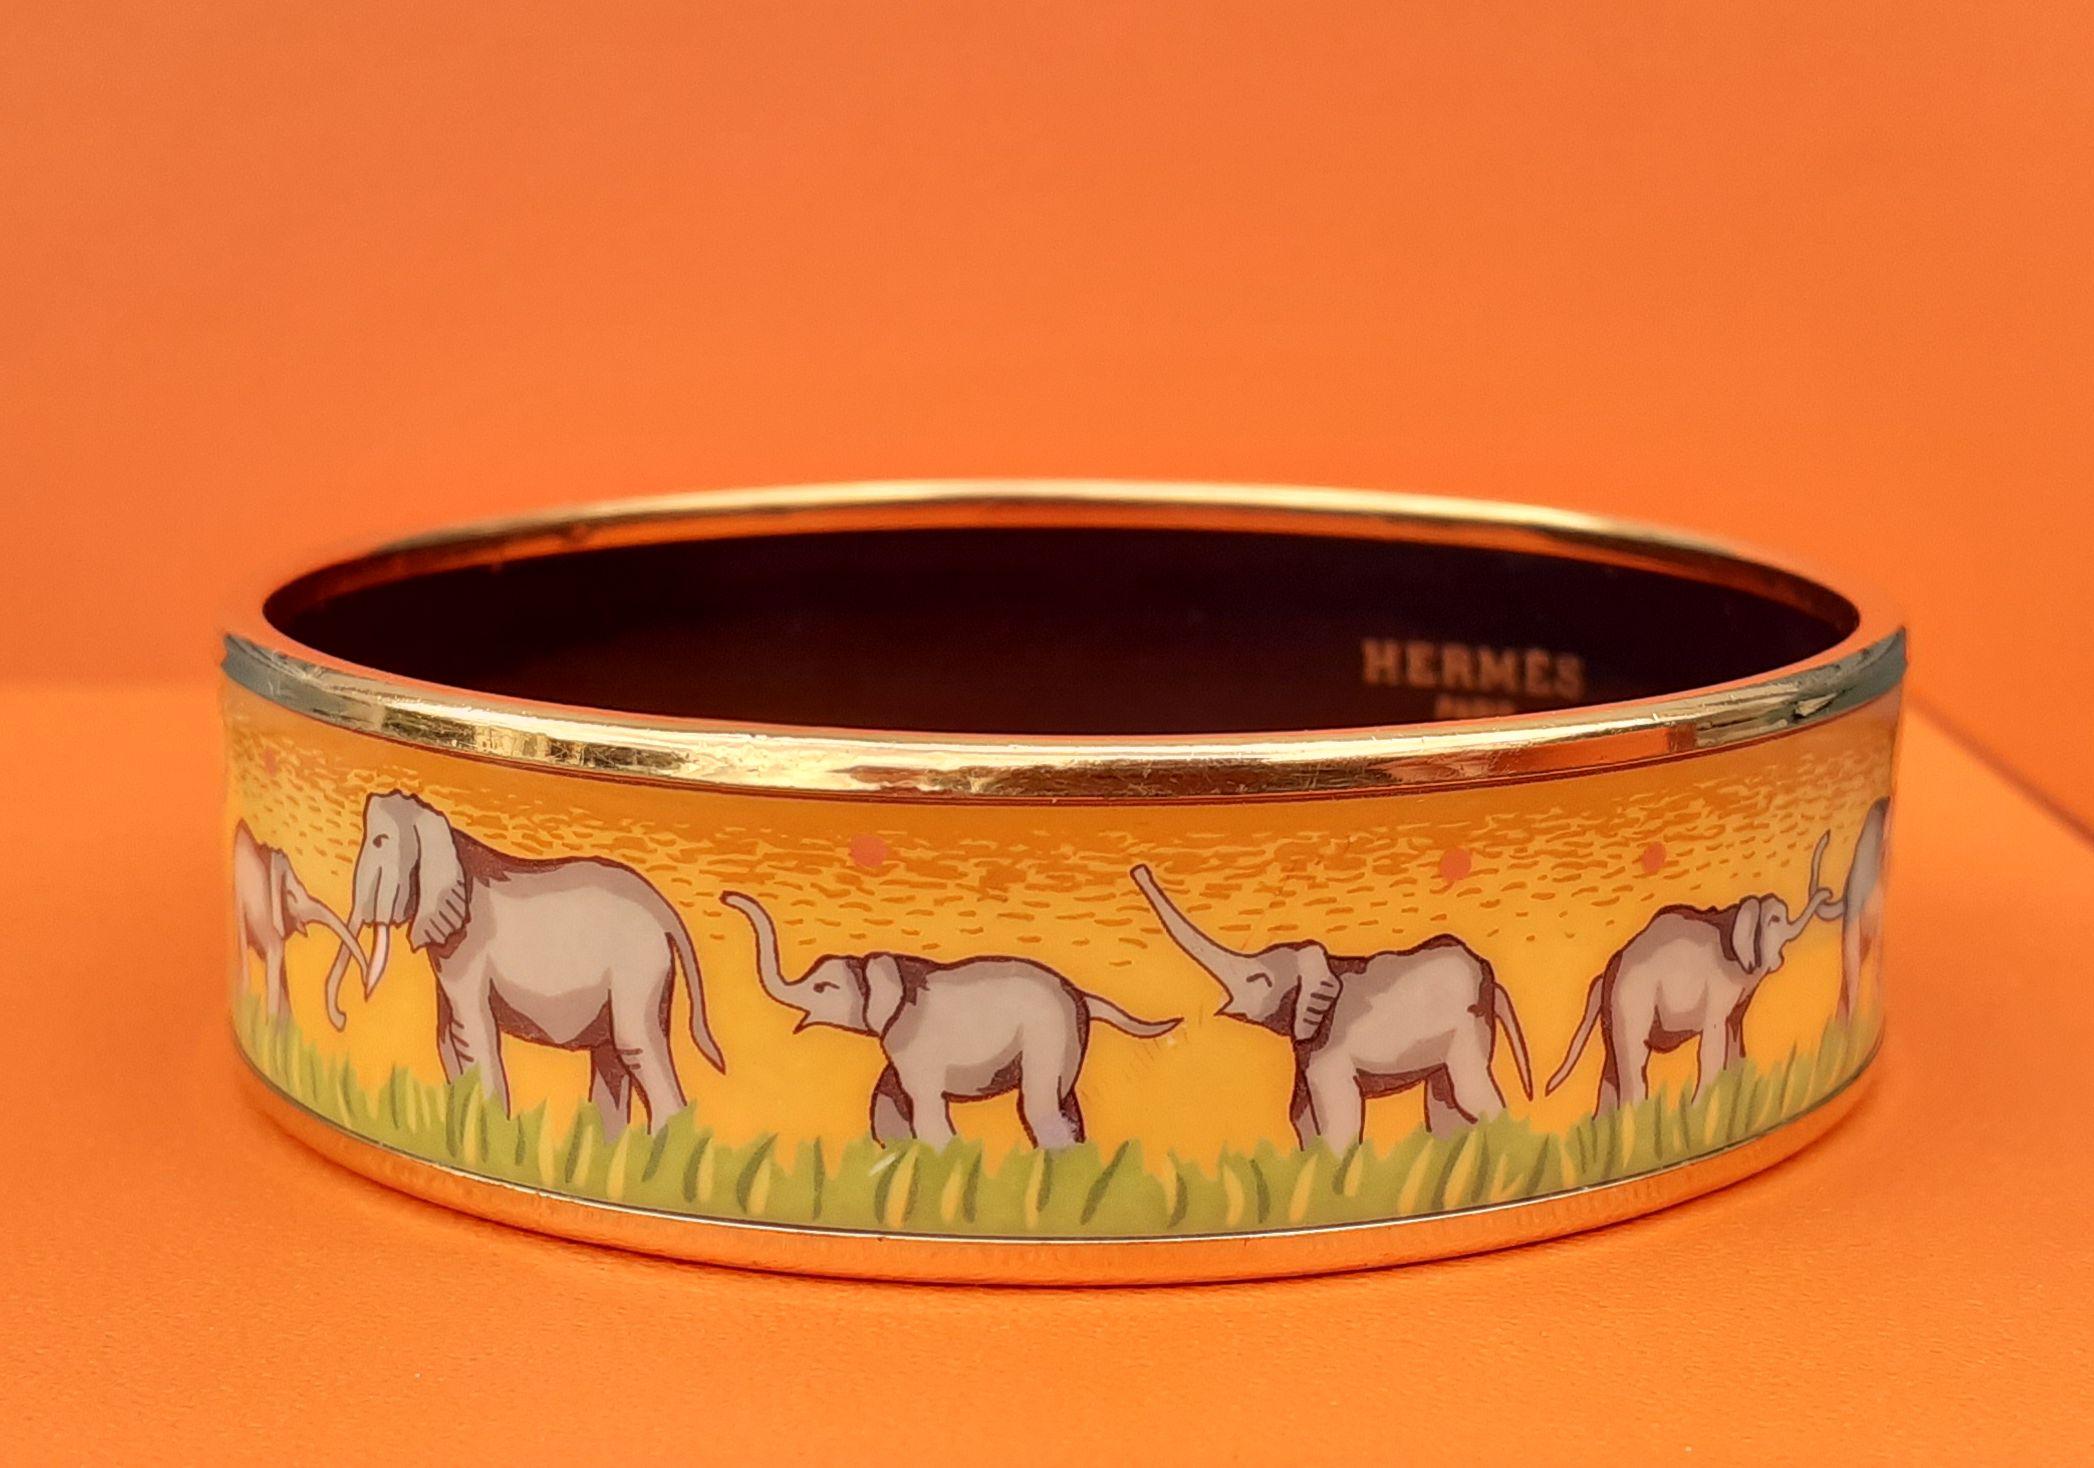 Hermès Enamel Printed Bracelet Elephants Grazing Yellow Gold Hdw Size 65 5